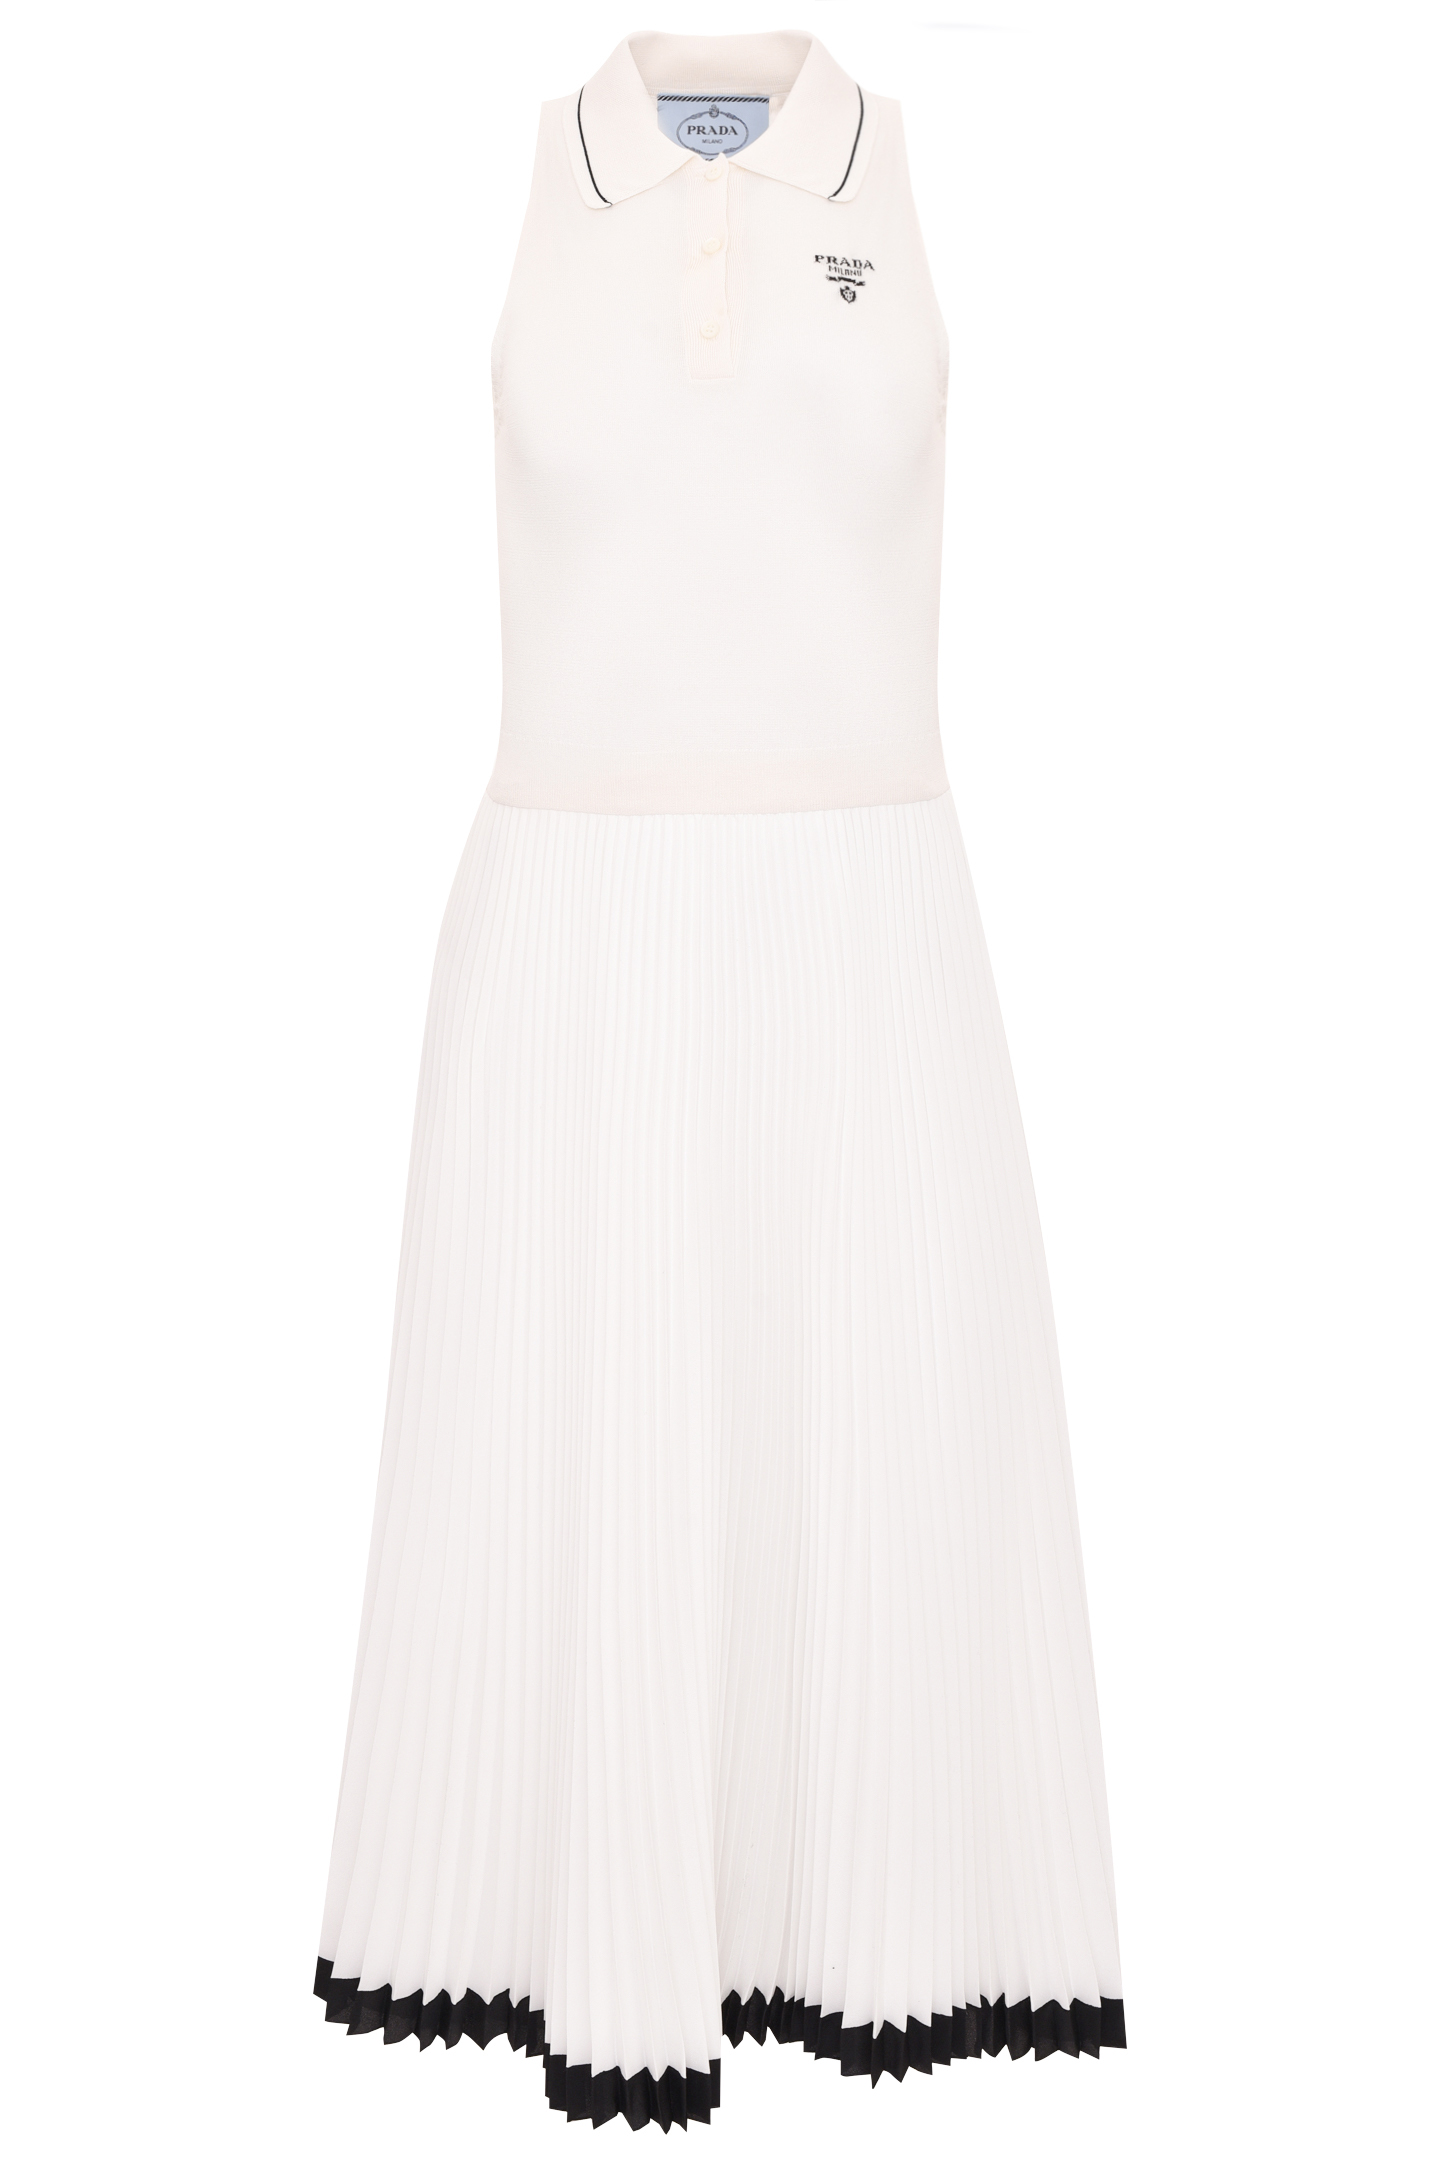 Платье PRADA P3B06 10FT, цвет: Белый, Женский